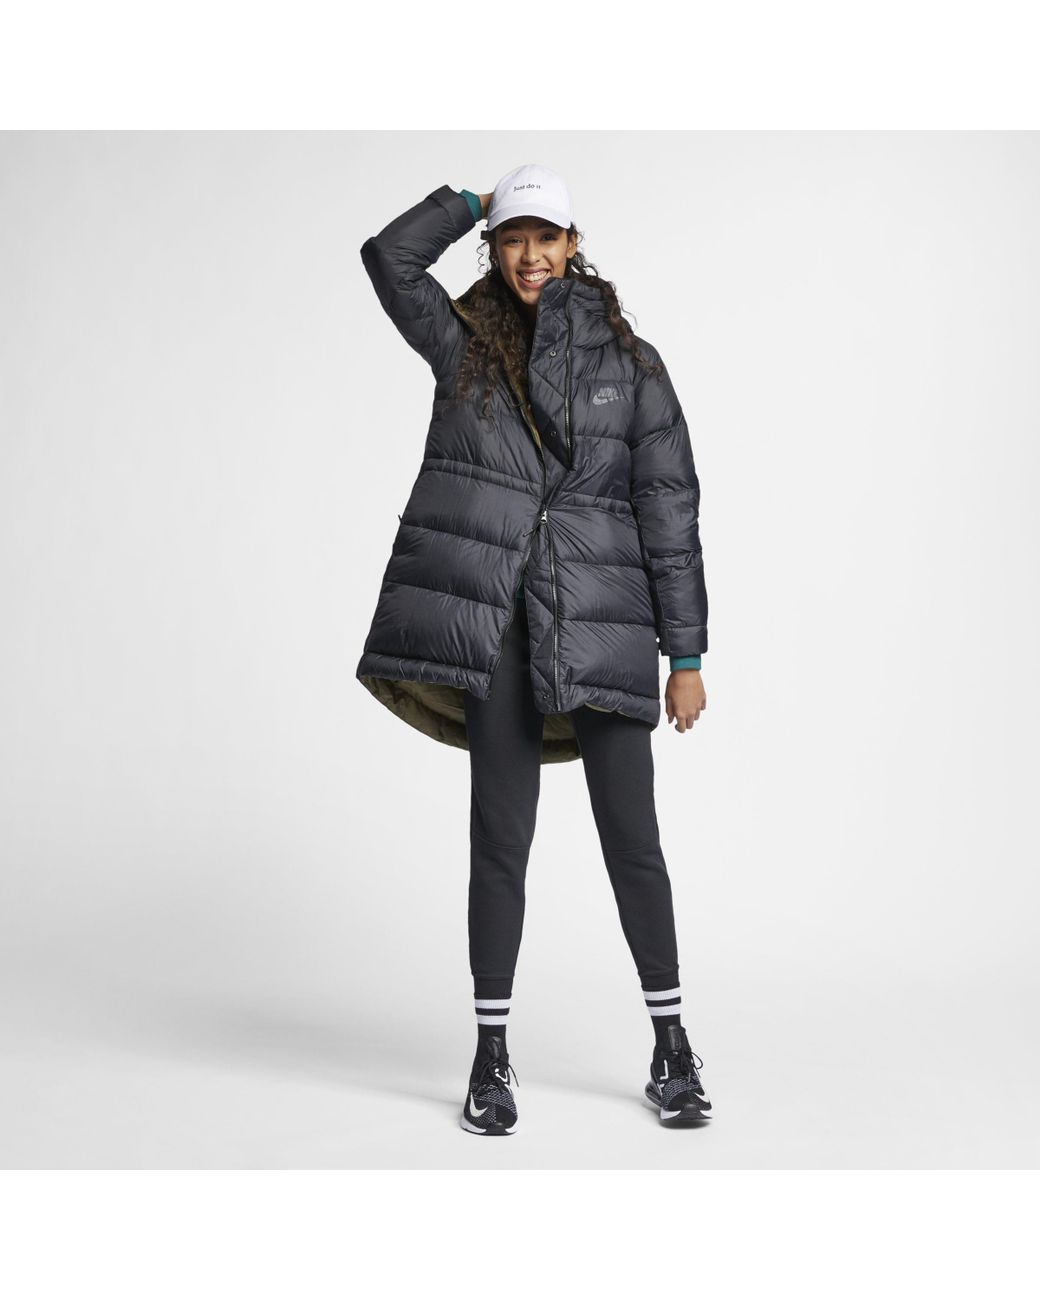 Nike Sportswear Women's Reversible Down Fill Jacket in Black | Lyst UK